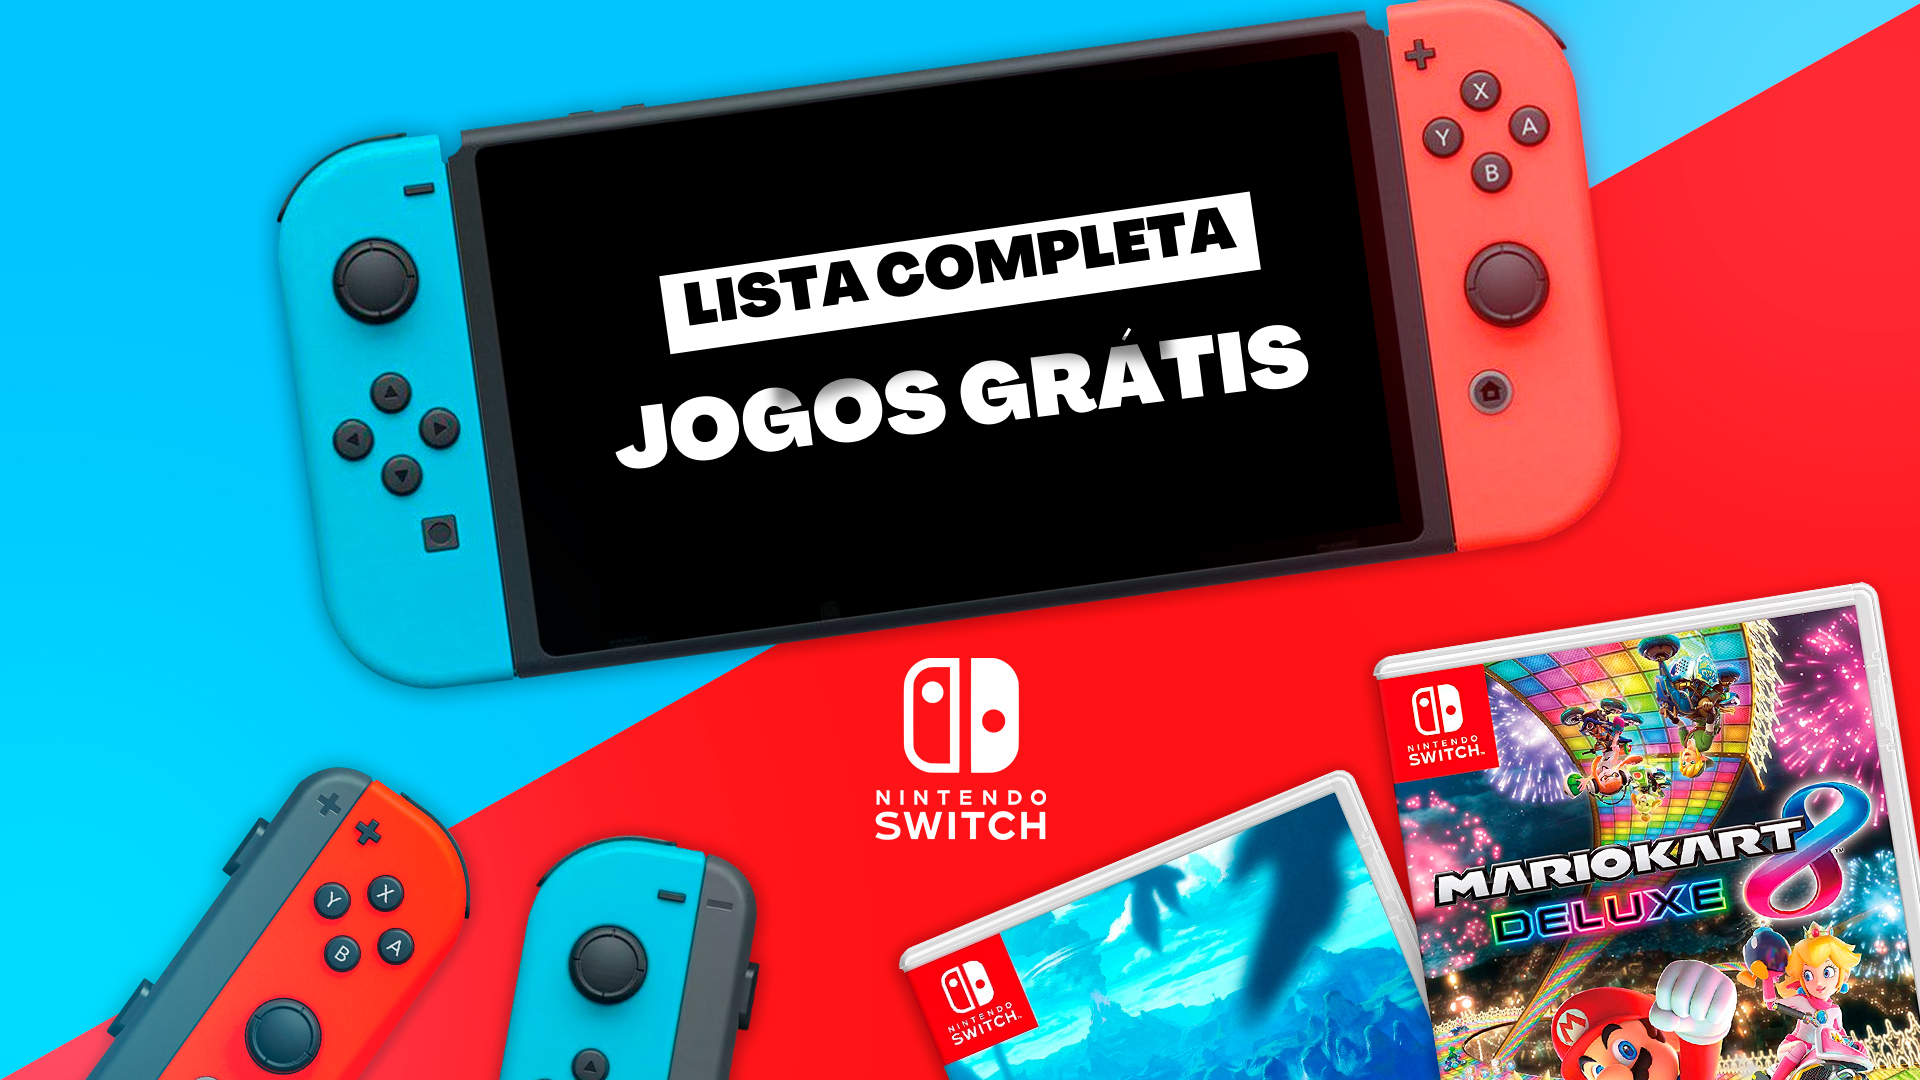 Nintendo Switch Jogos Gratis! Confira a lista de jogos gratuitos sem Assinatura do Switch Online